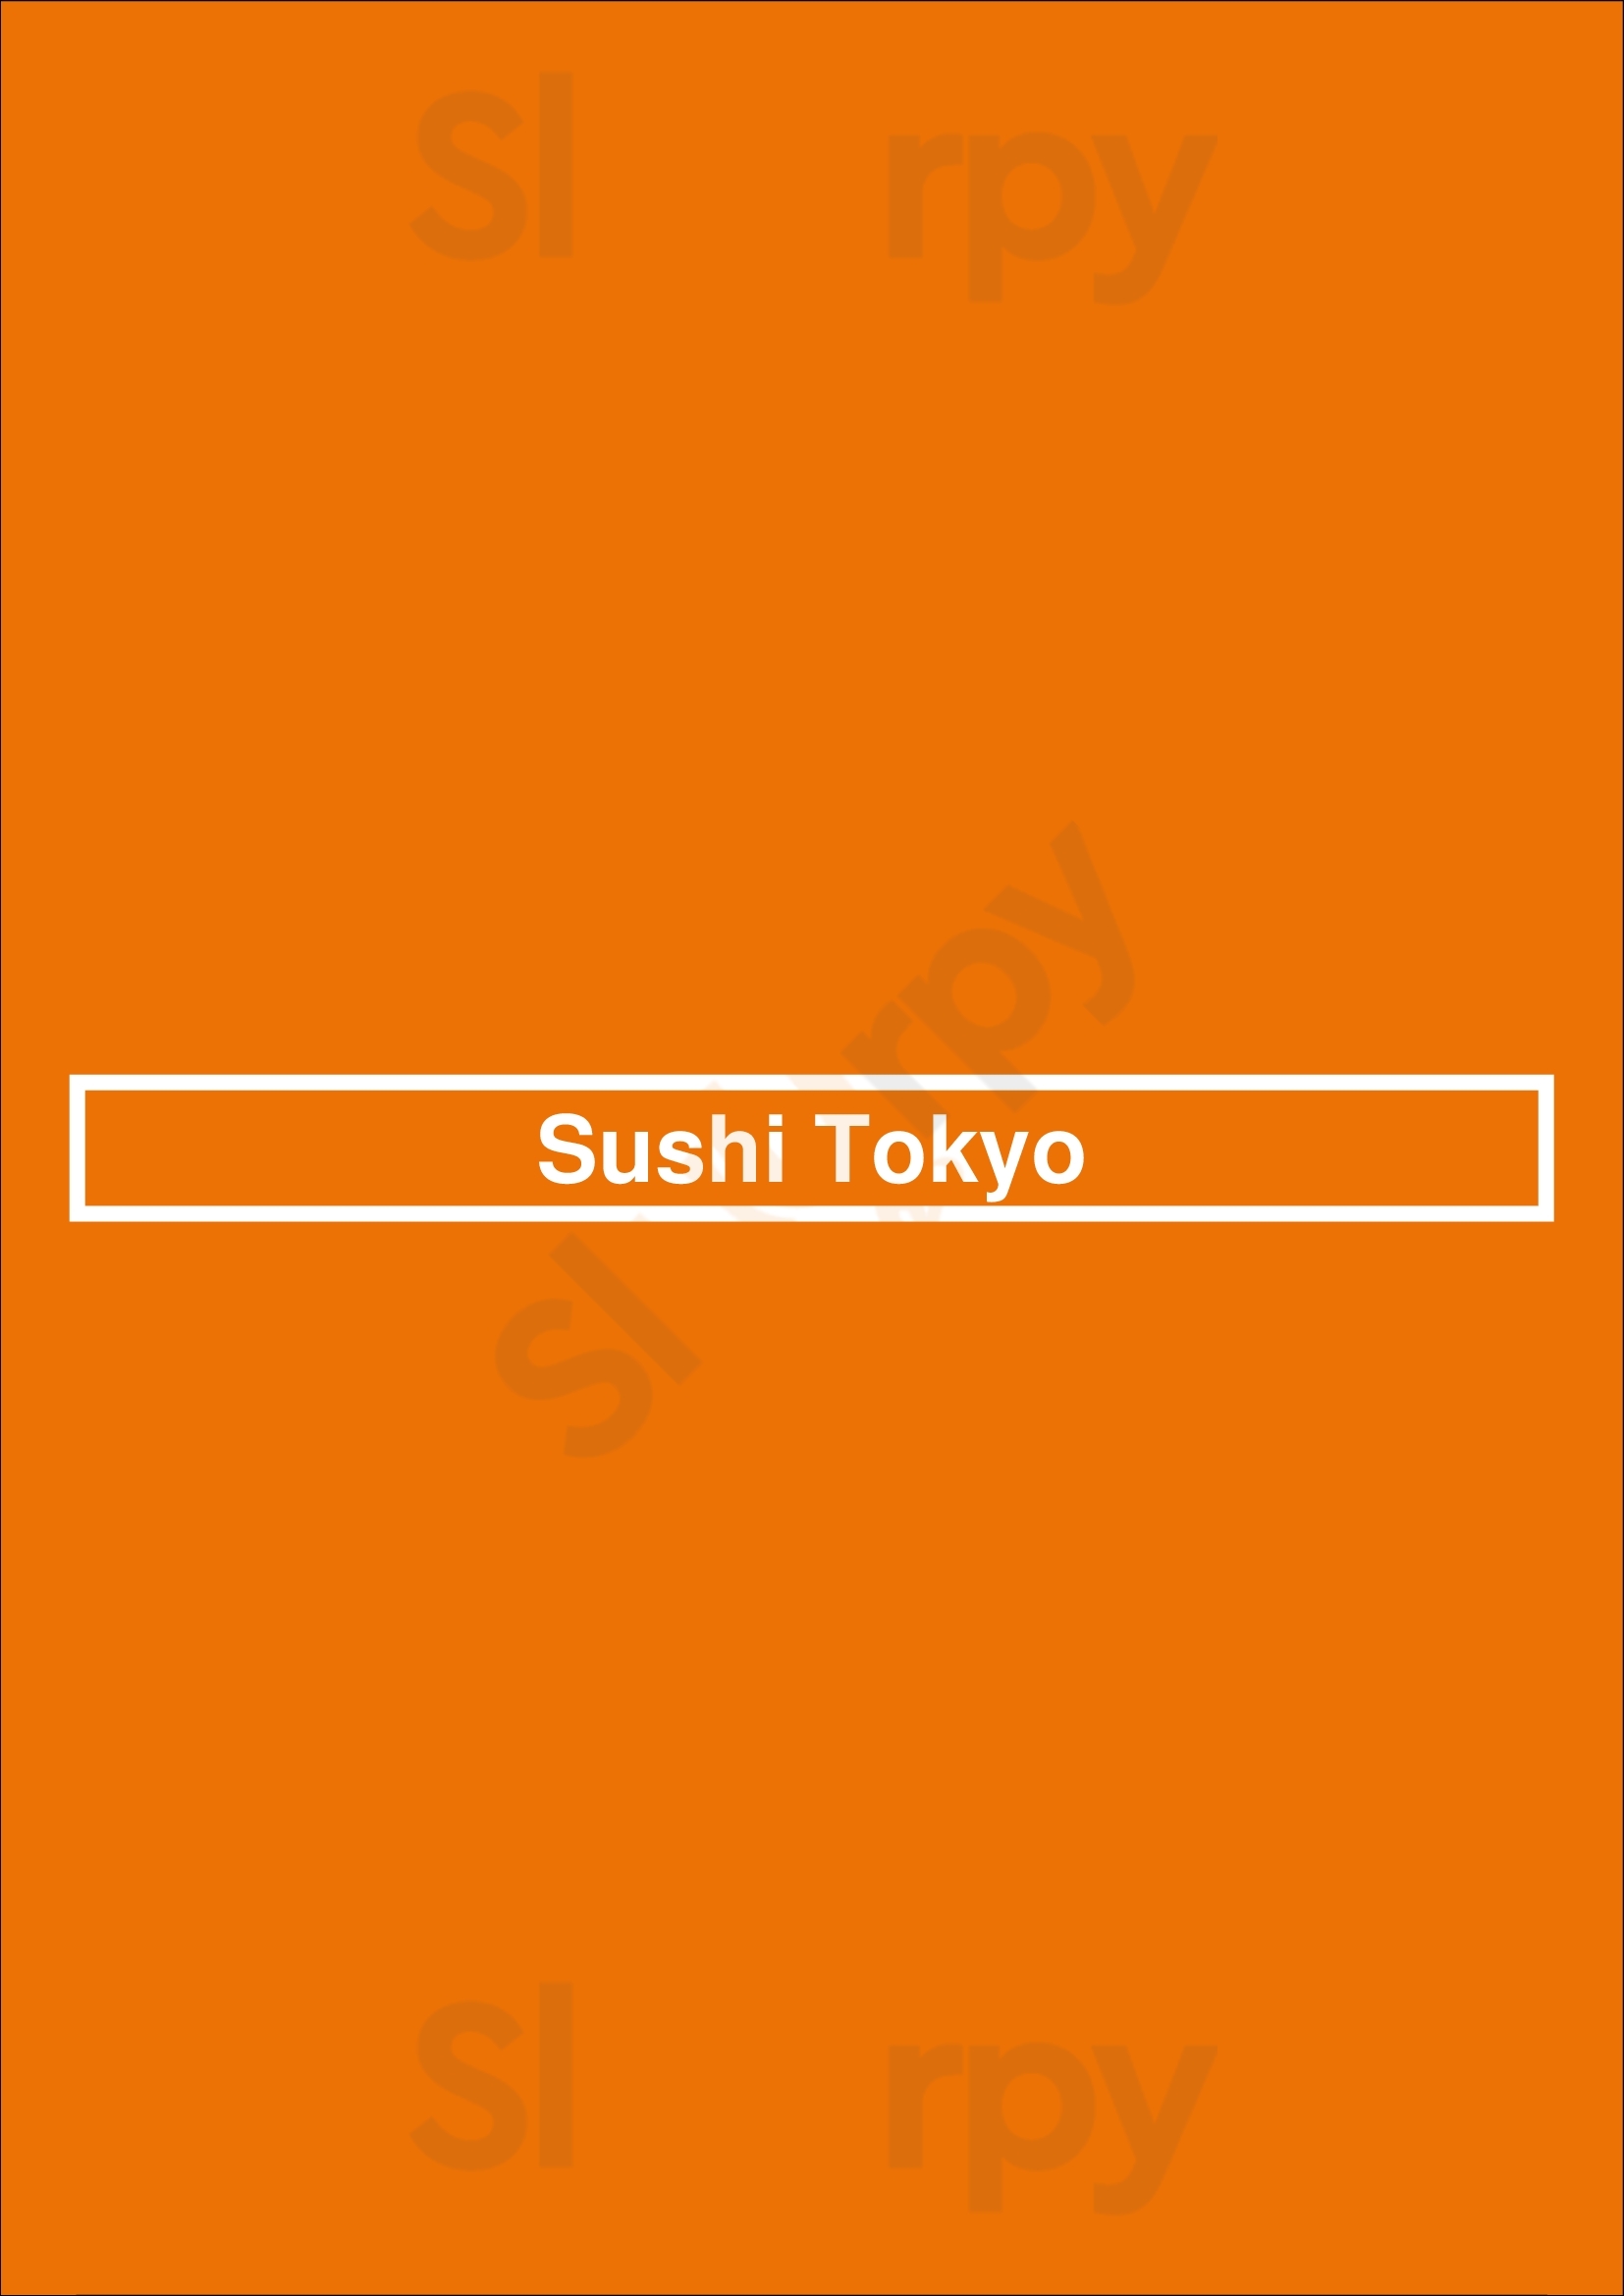 Sushi Tokyo Seattle Menu - 1